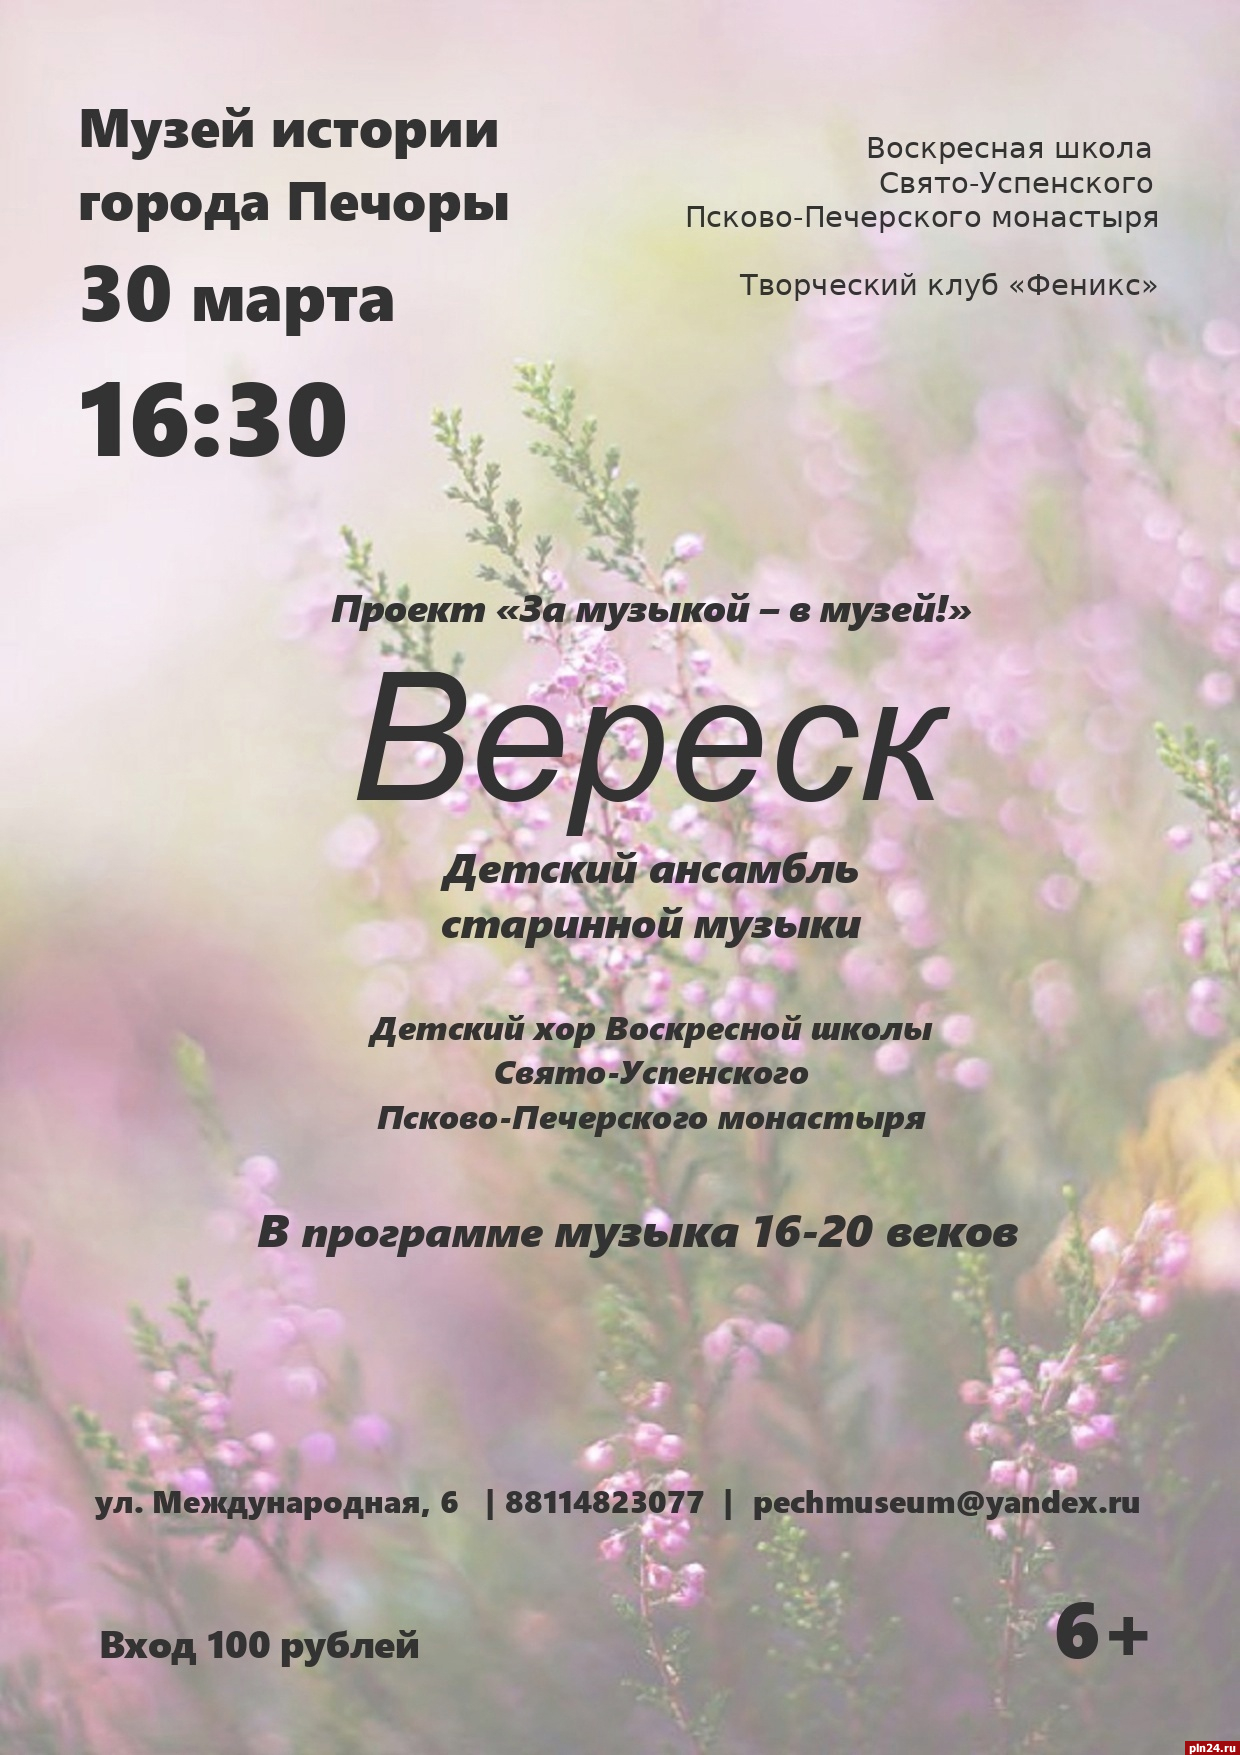 Концерт ансамбля «Вереск» пройдет в печорском музее